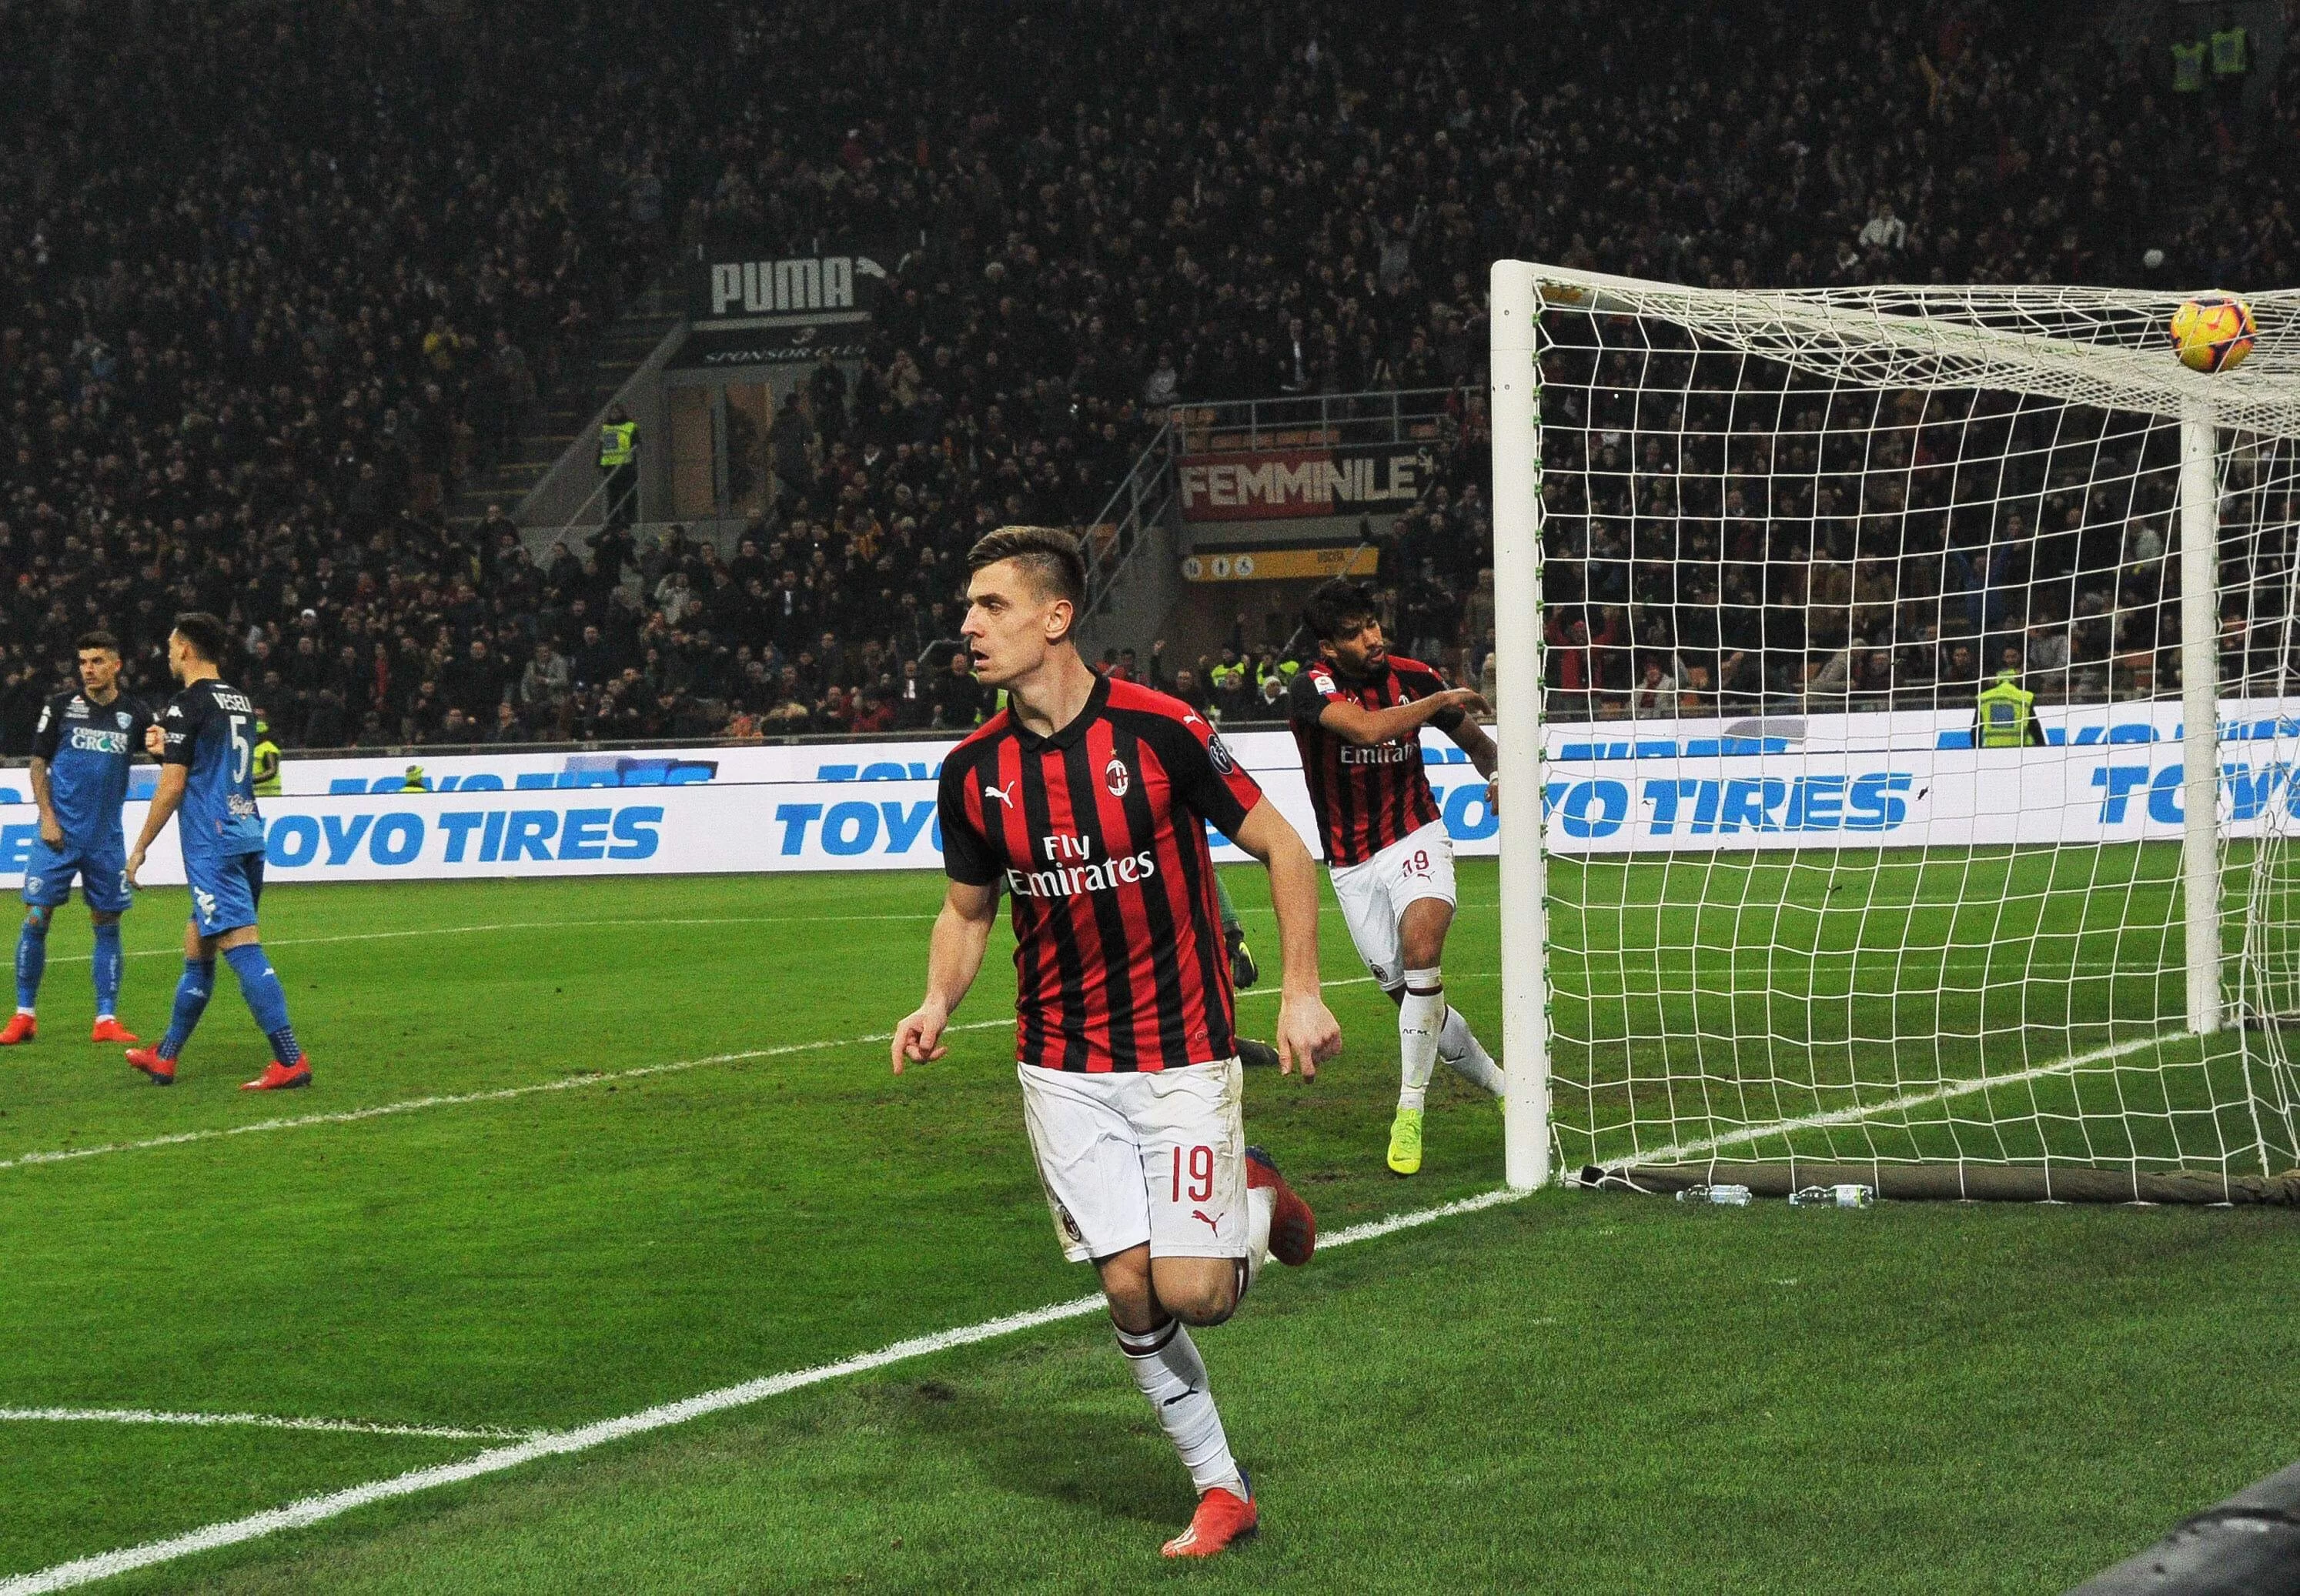 Serie A, ammucchiata per l’Europa: dal Milan all’Atalanta, dodici gare di fuoco con tante possibili sorprese